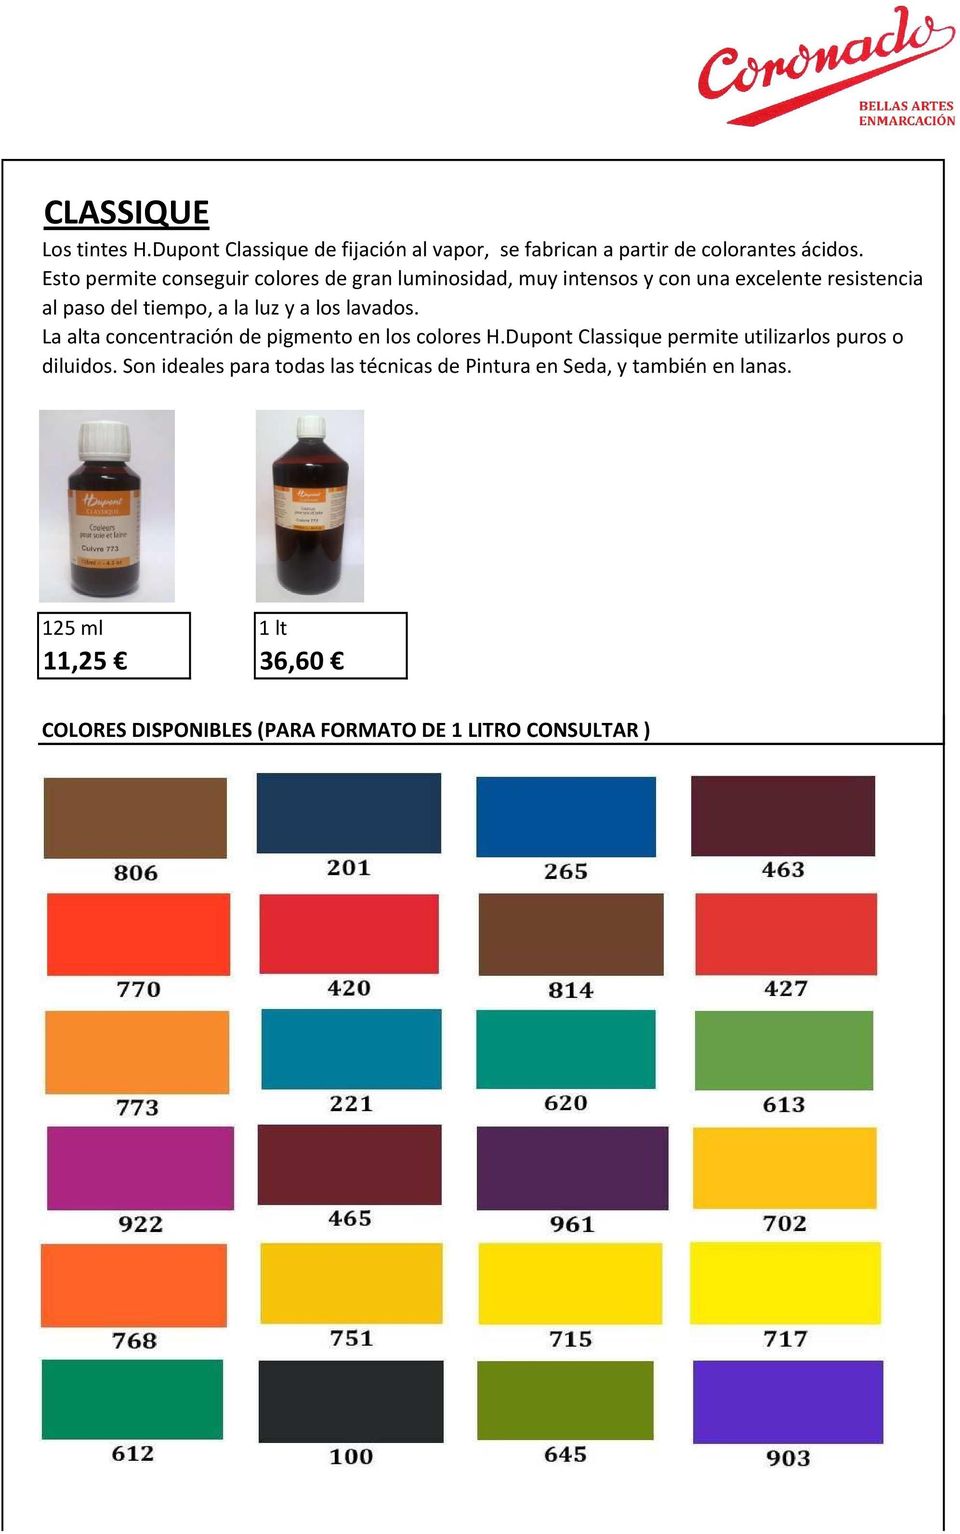 a los lavados. La alta concentración de pigmento en los colores H.Dupont Classique permite utilizarlos puros o diluidos.